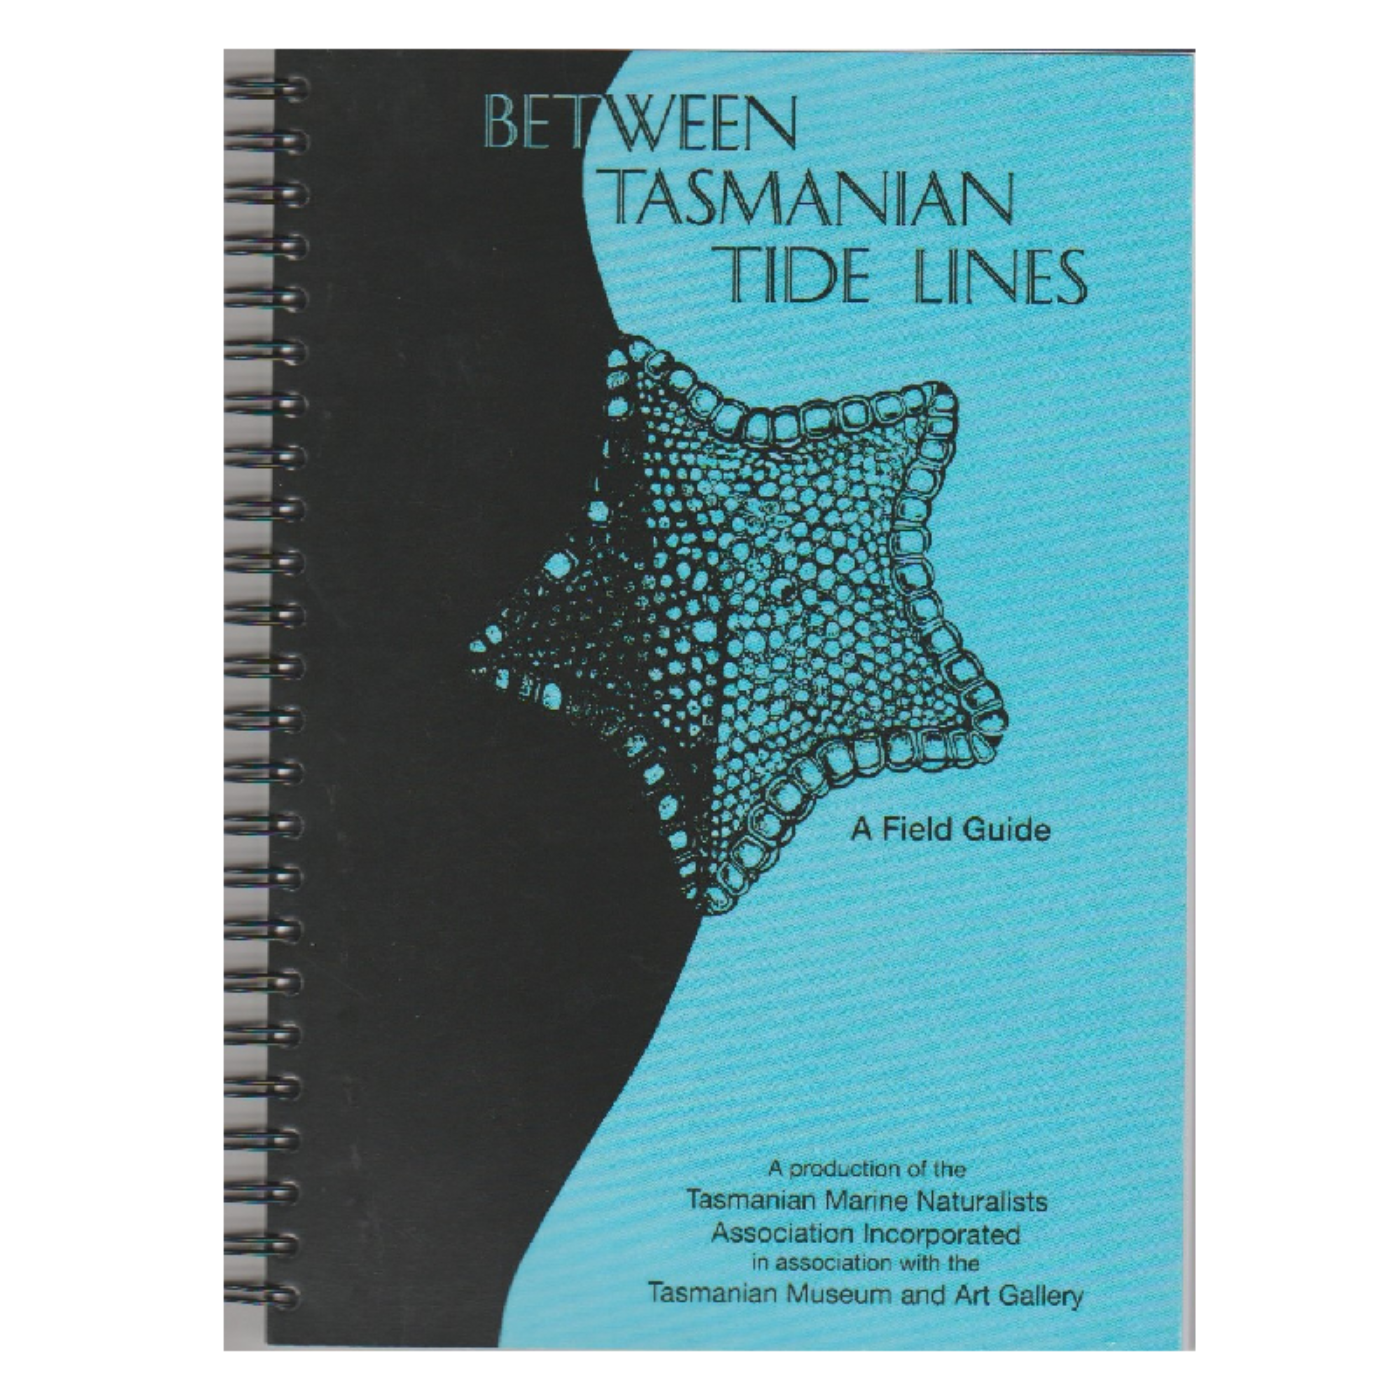 Between Tasmanian Tide Lines - A Field Guide